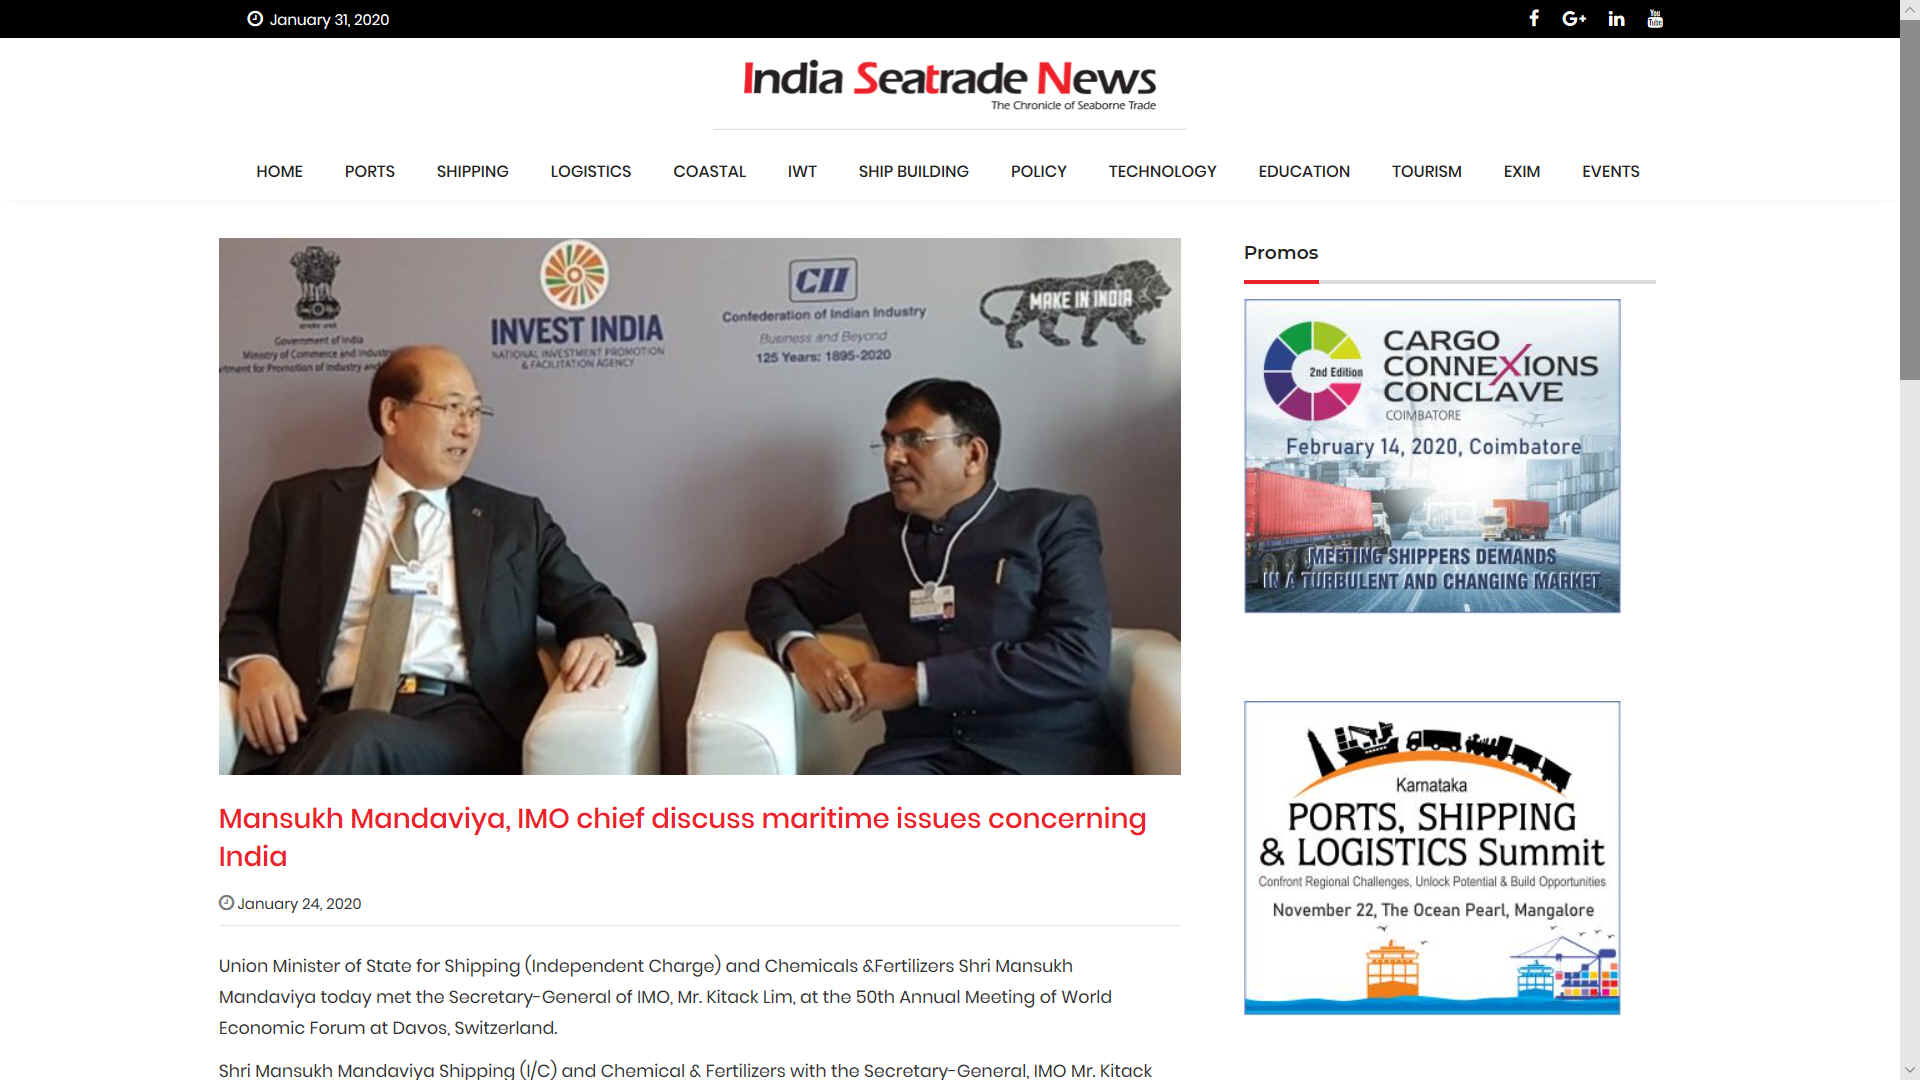 Kitack Lim @ DAVOS with Mansukh Mandaviya India